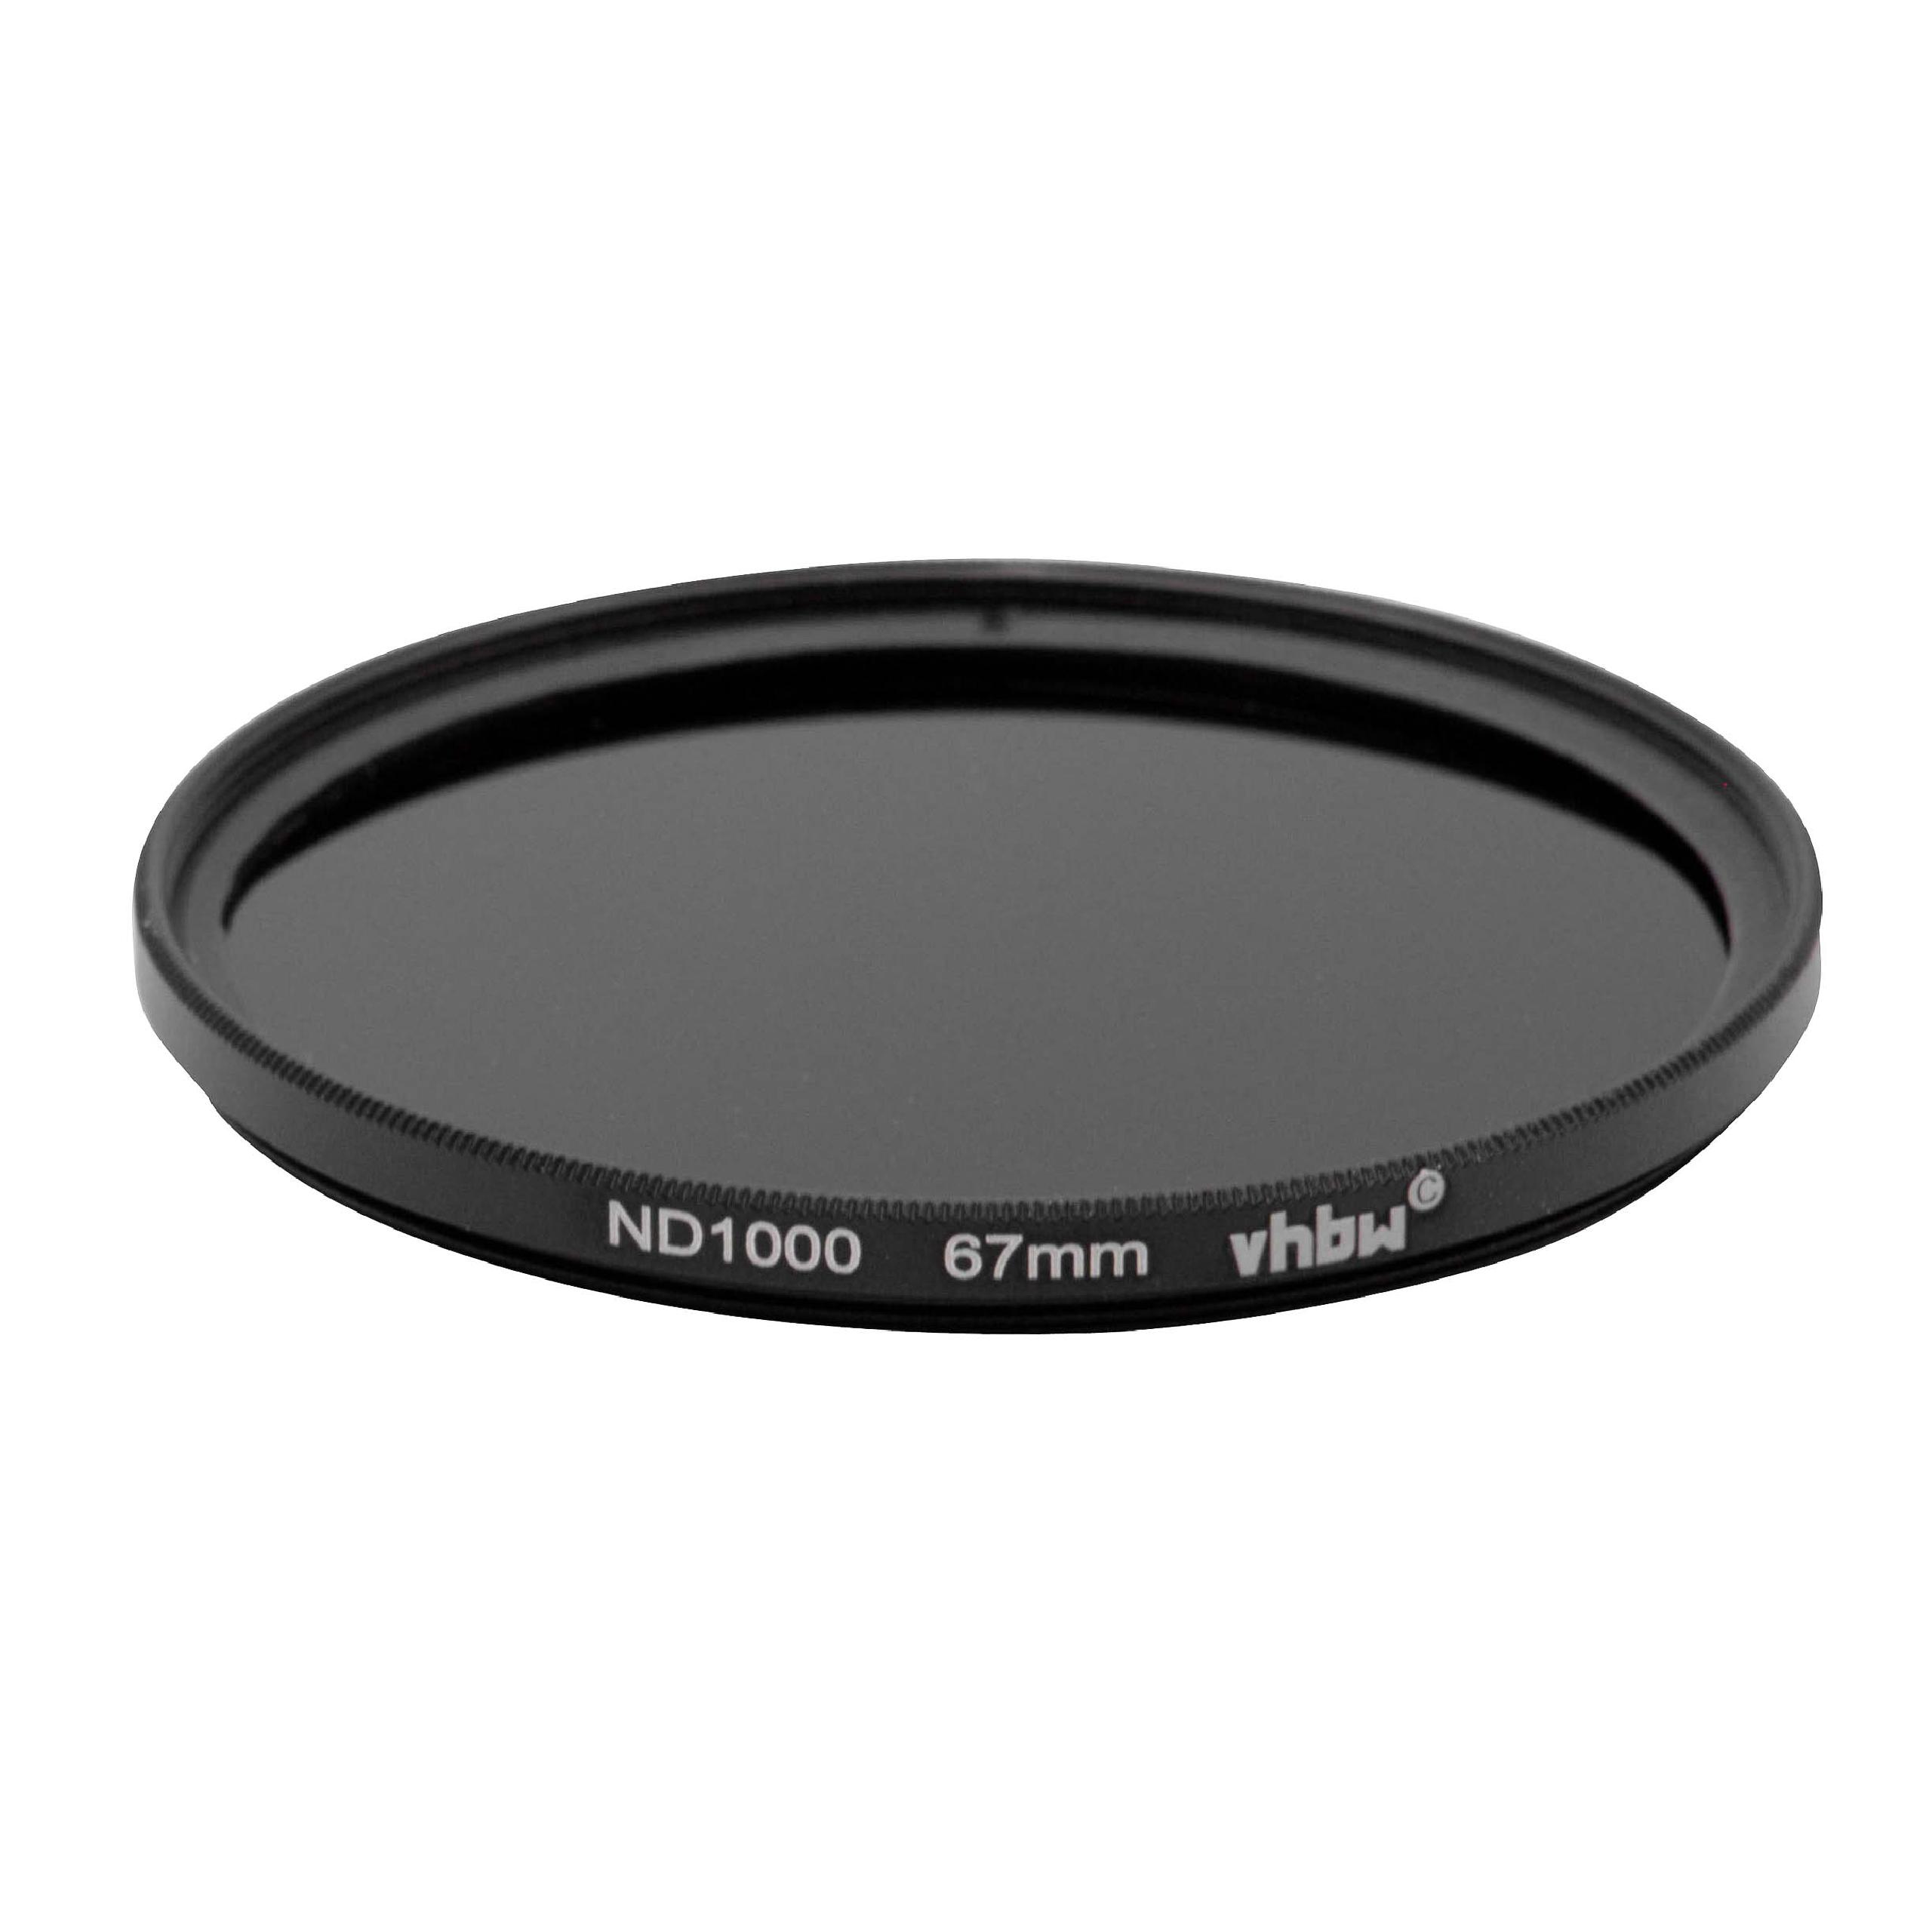 Filtre ND 1000 universel pour objectif d'appareil photo de 67 mm de diamètre – Filtre gris